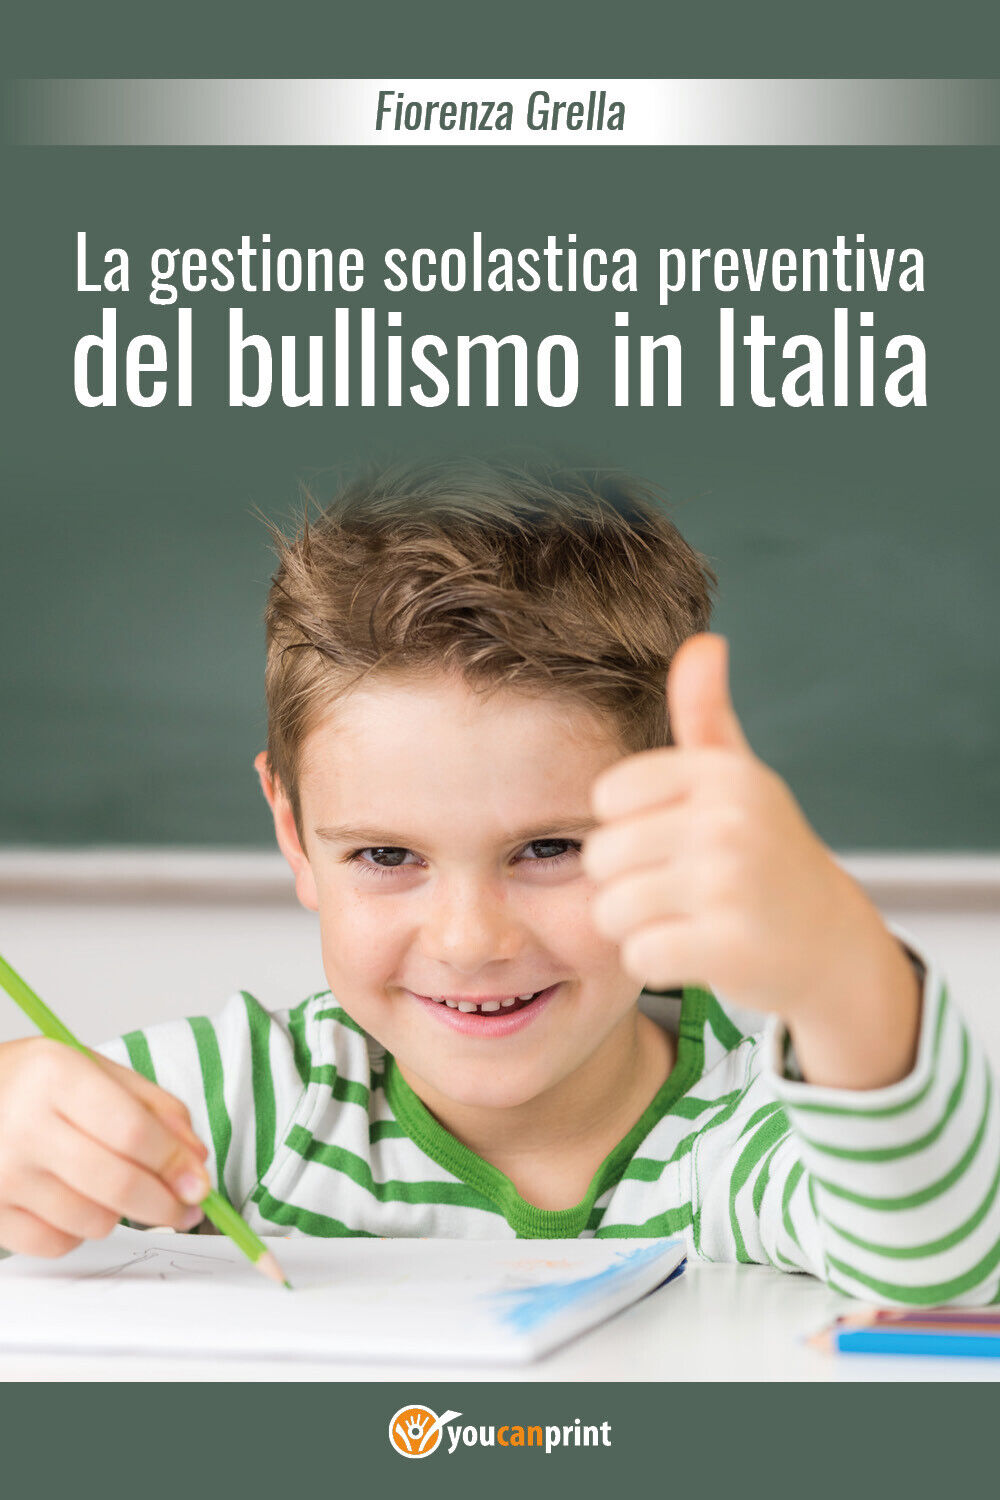 La gestione scolastica preventiva del bullismo in Italia - Fiorenza Grella,  201